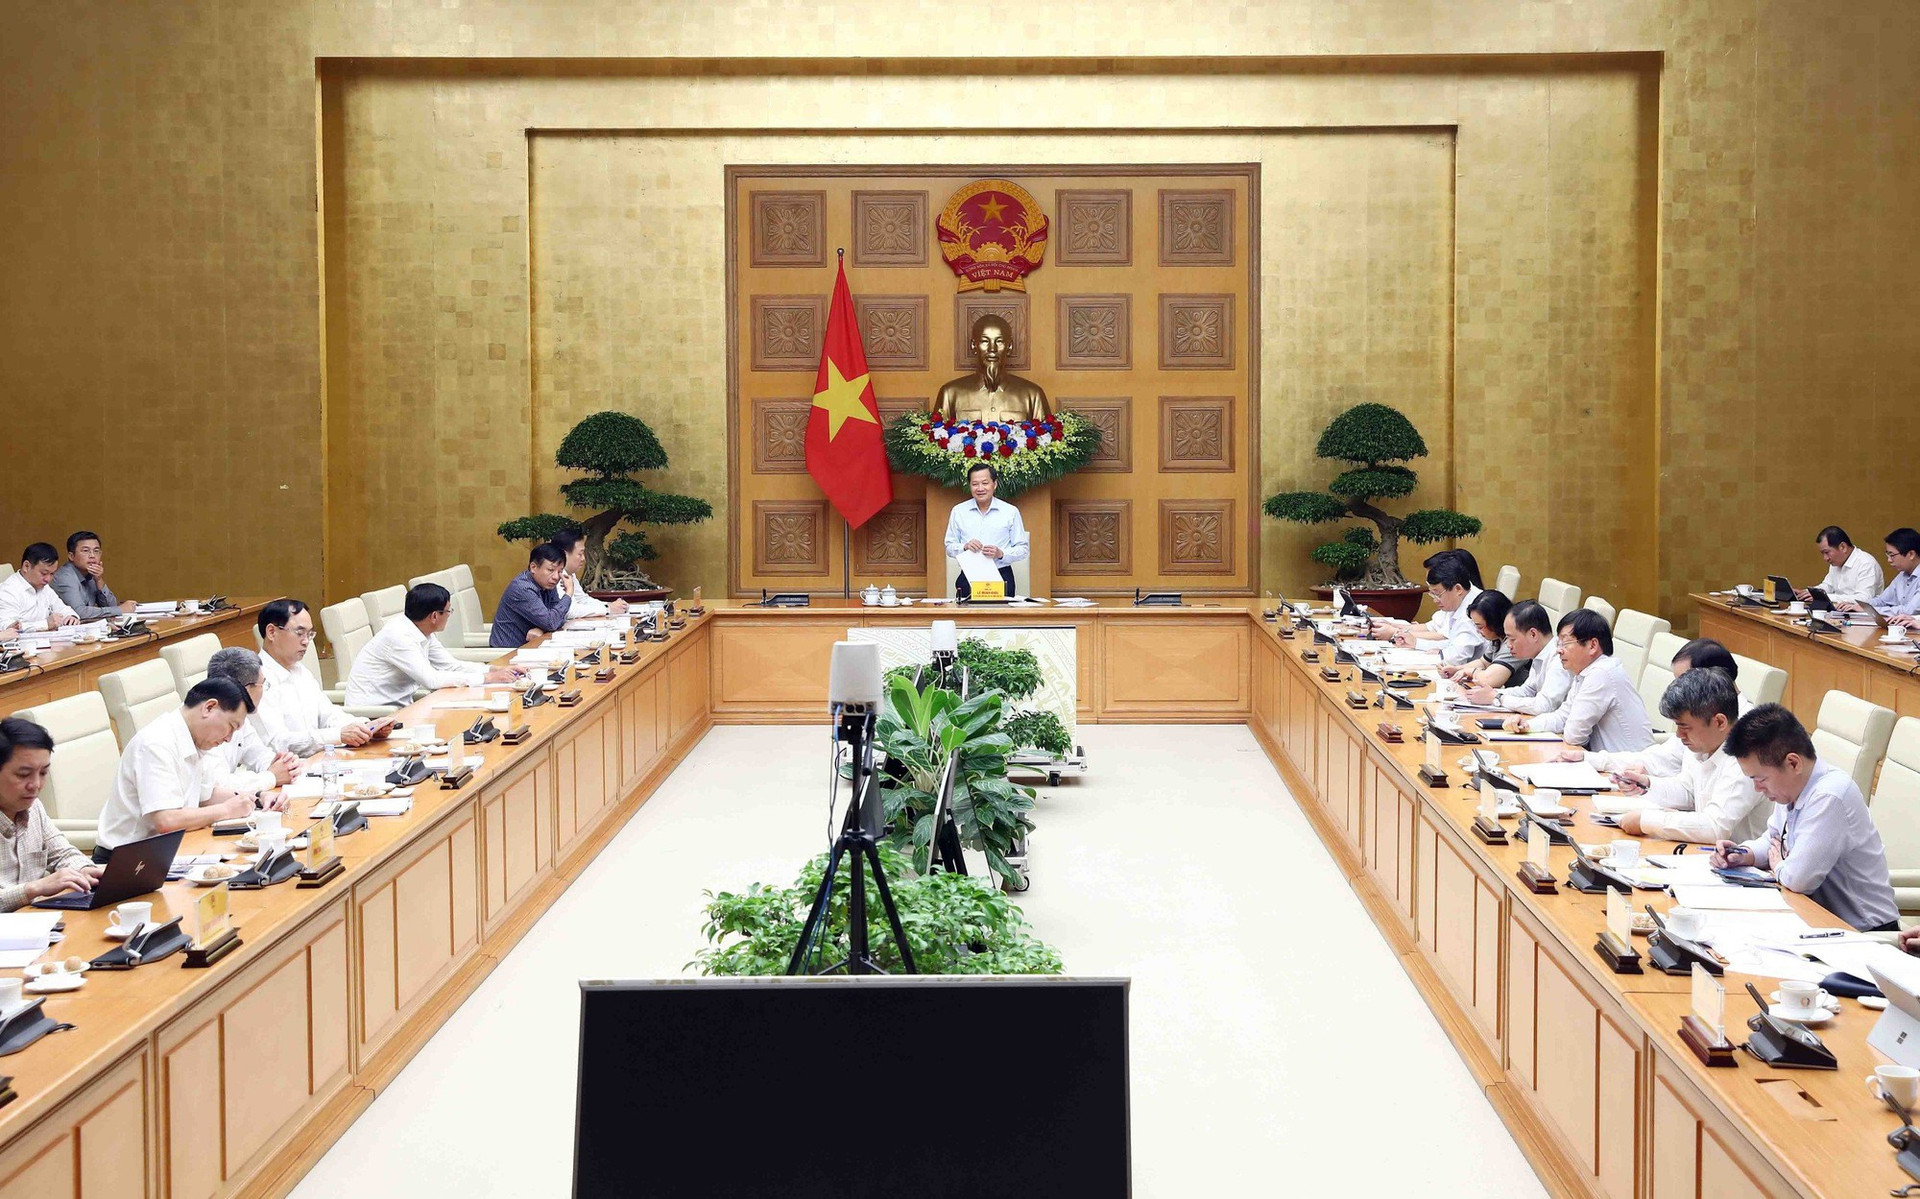 Phó Thủ tướng Lê Minh Khái yêu cầu hoàn thiện phương án xử lý dứt điểm dự án DQS - Ảnh 2.